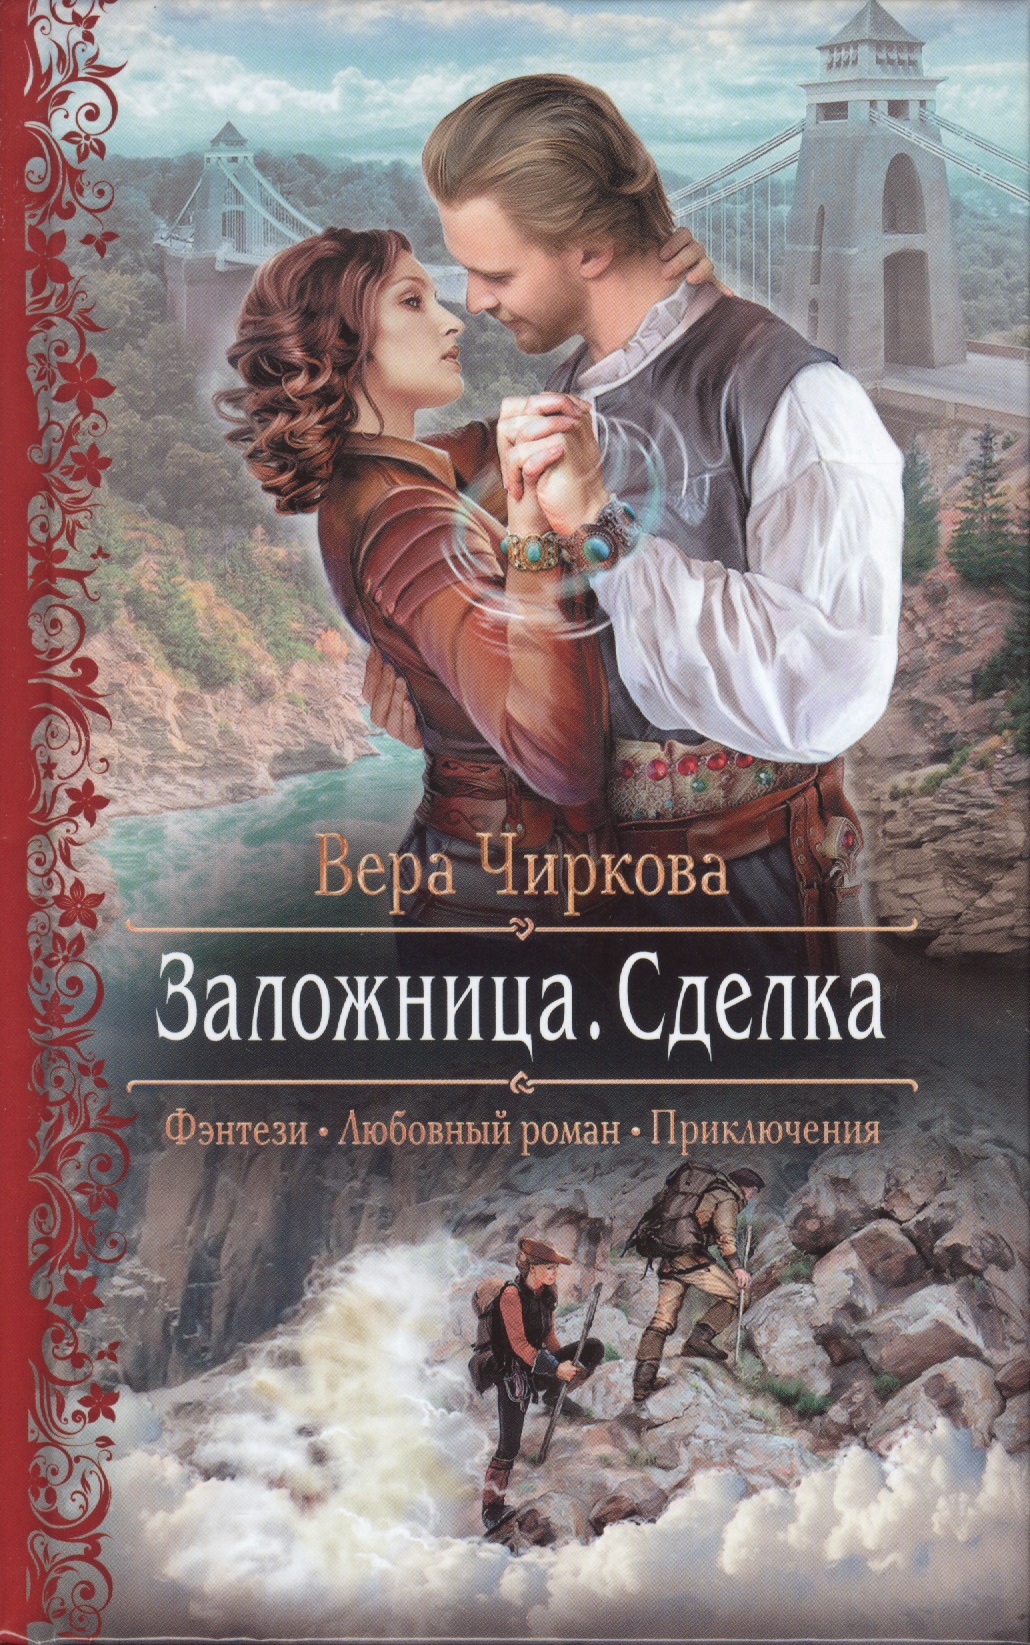 Русское фэнтези книги слушать. Романтическое фэнтези. Любовно-фантастические романы.